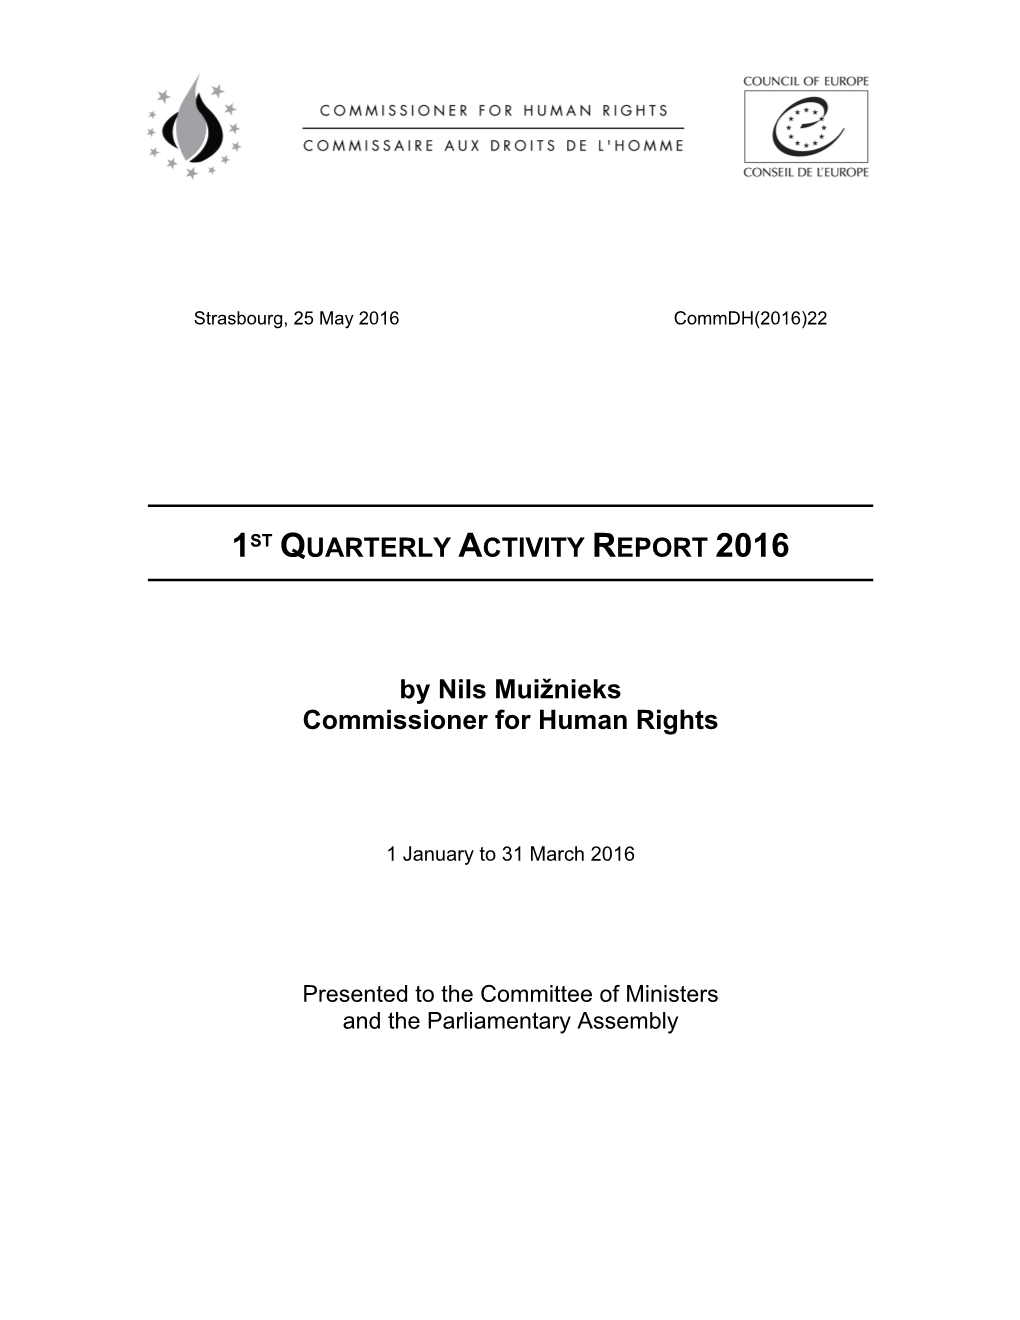 1ST QUARTERLY ACTIVITY REPORT 2016 by Nils Muižnieks